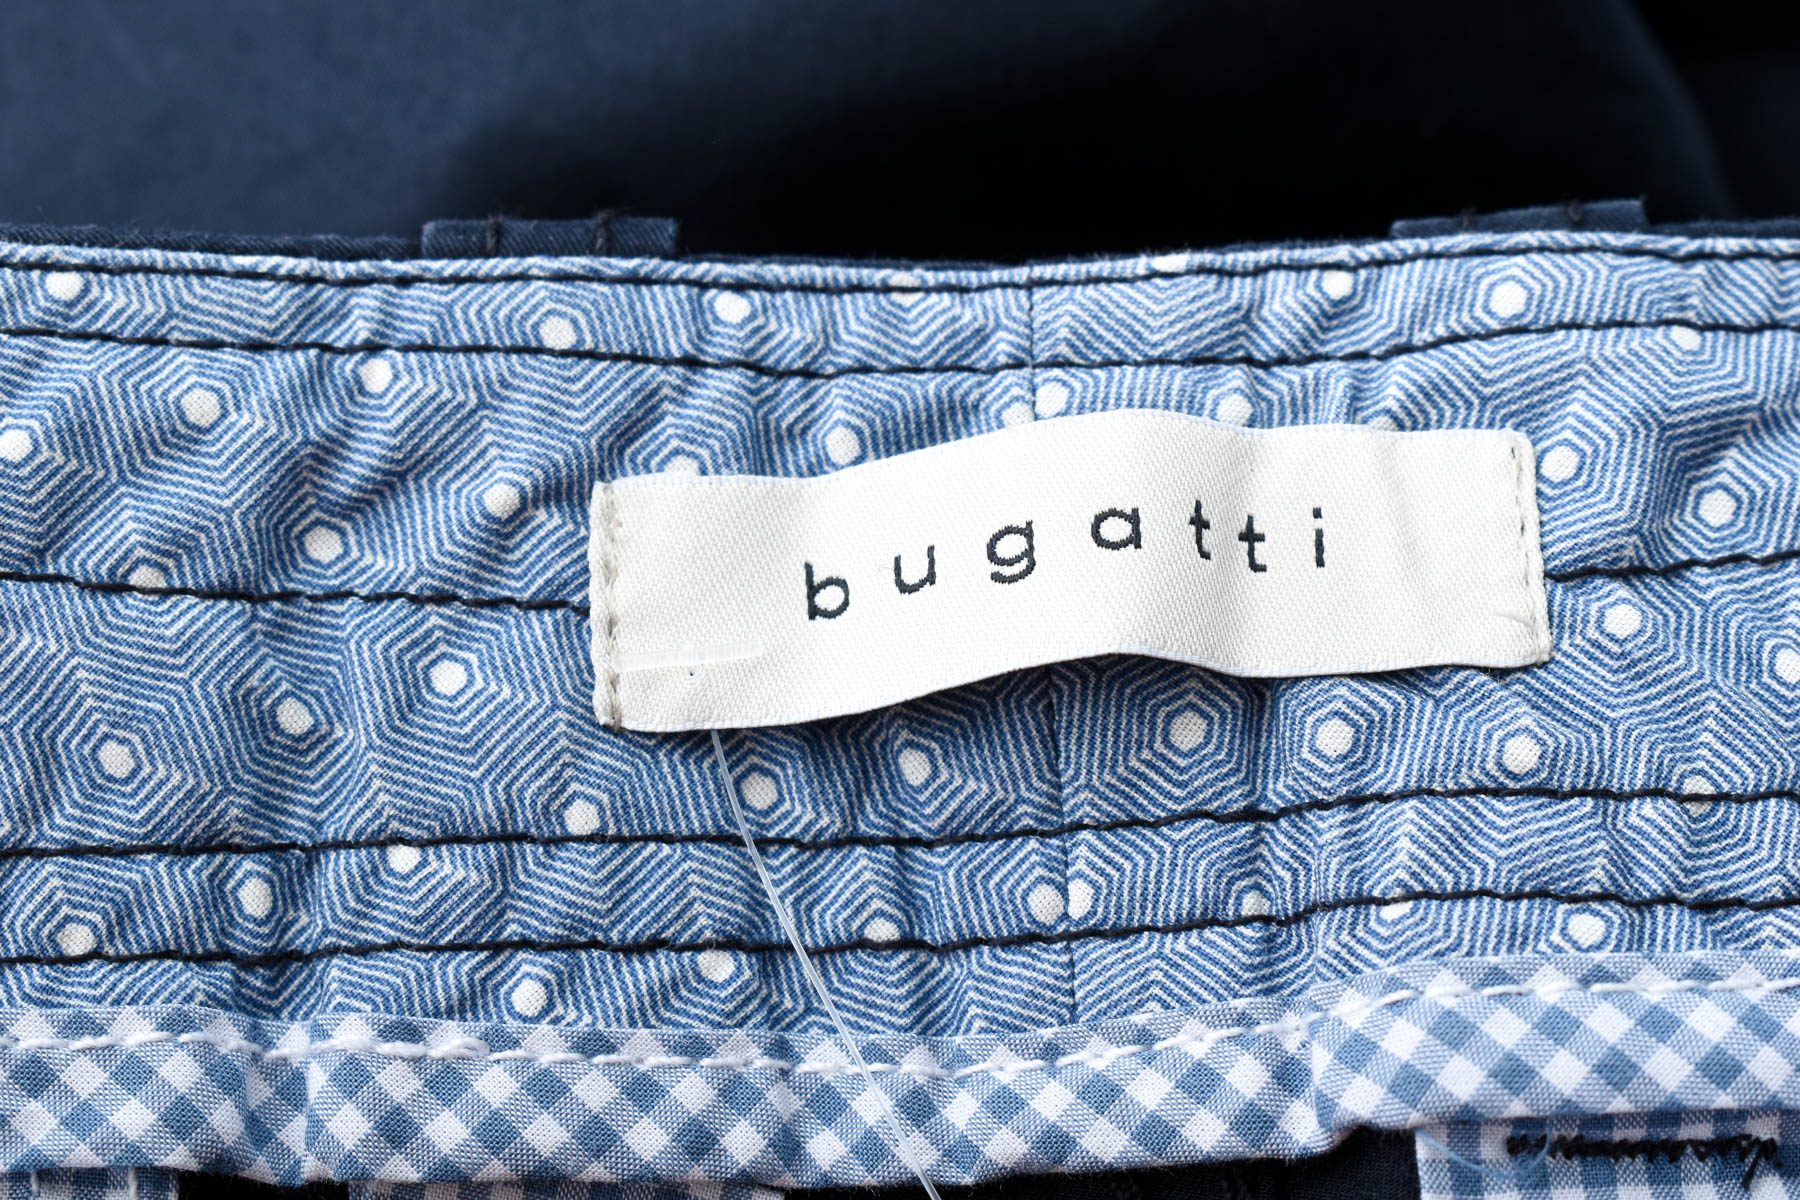 Pantaloni scurți bărbați - Bugatti - 2